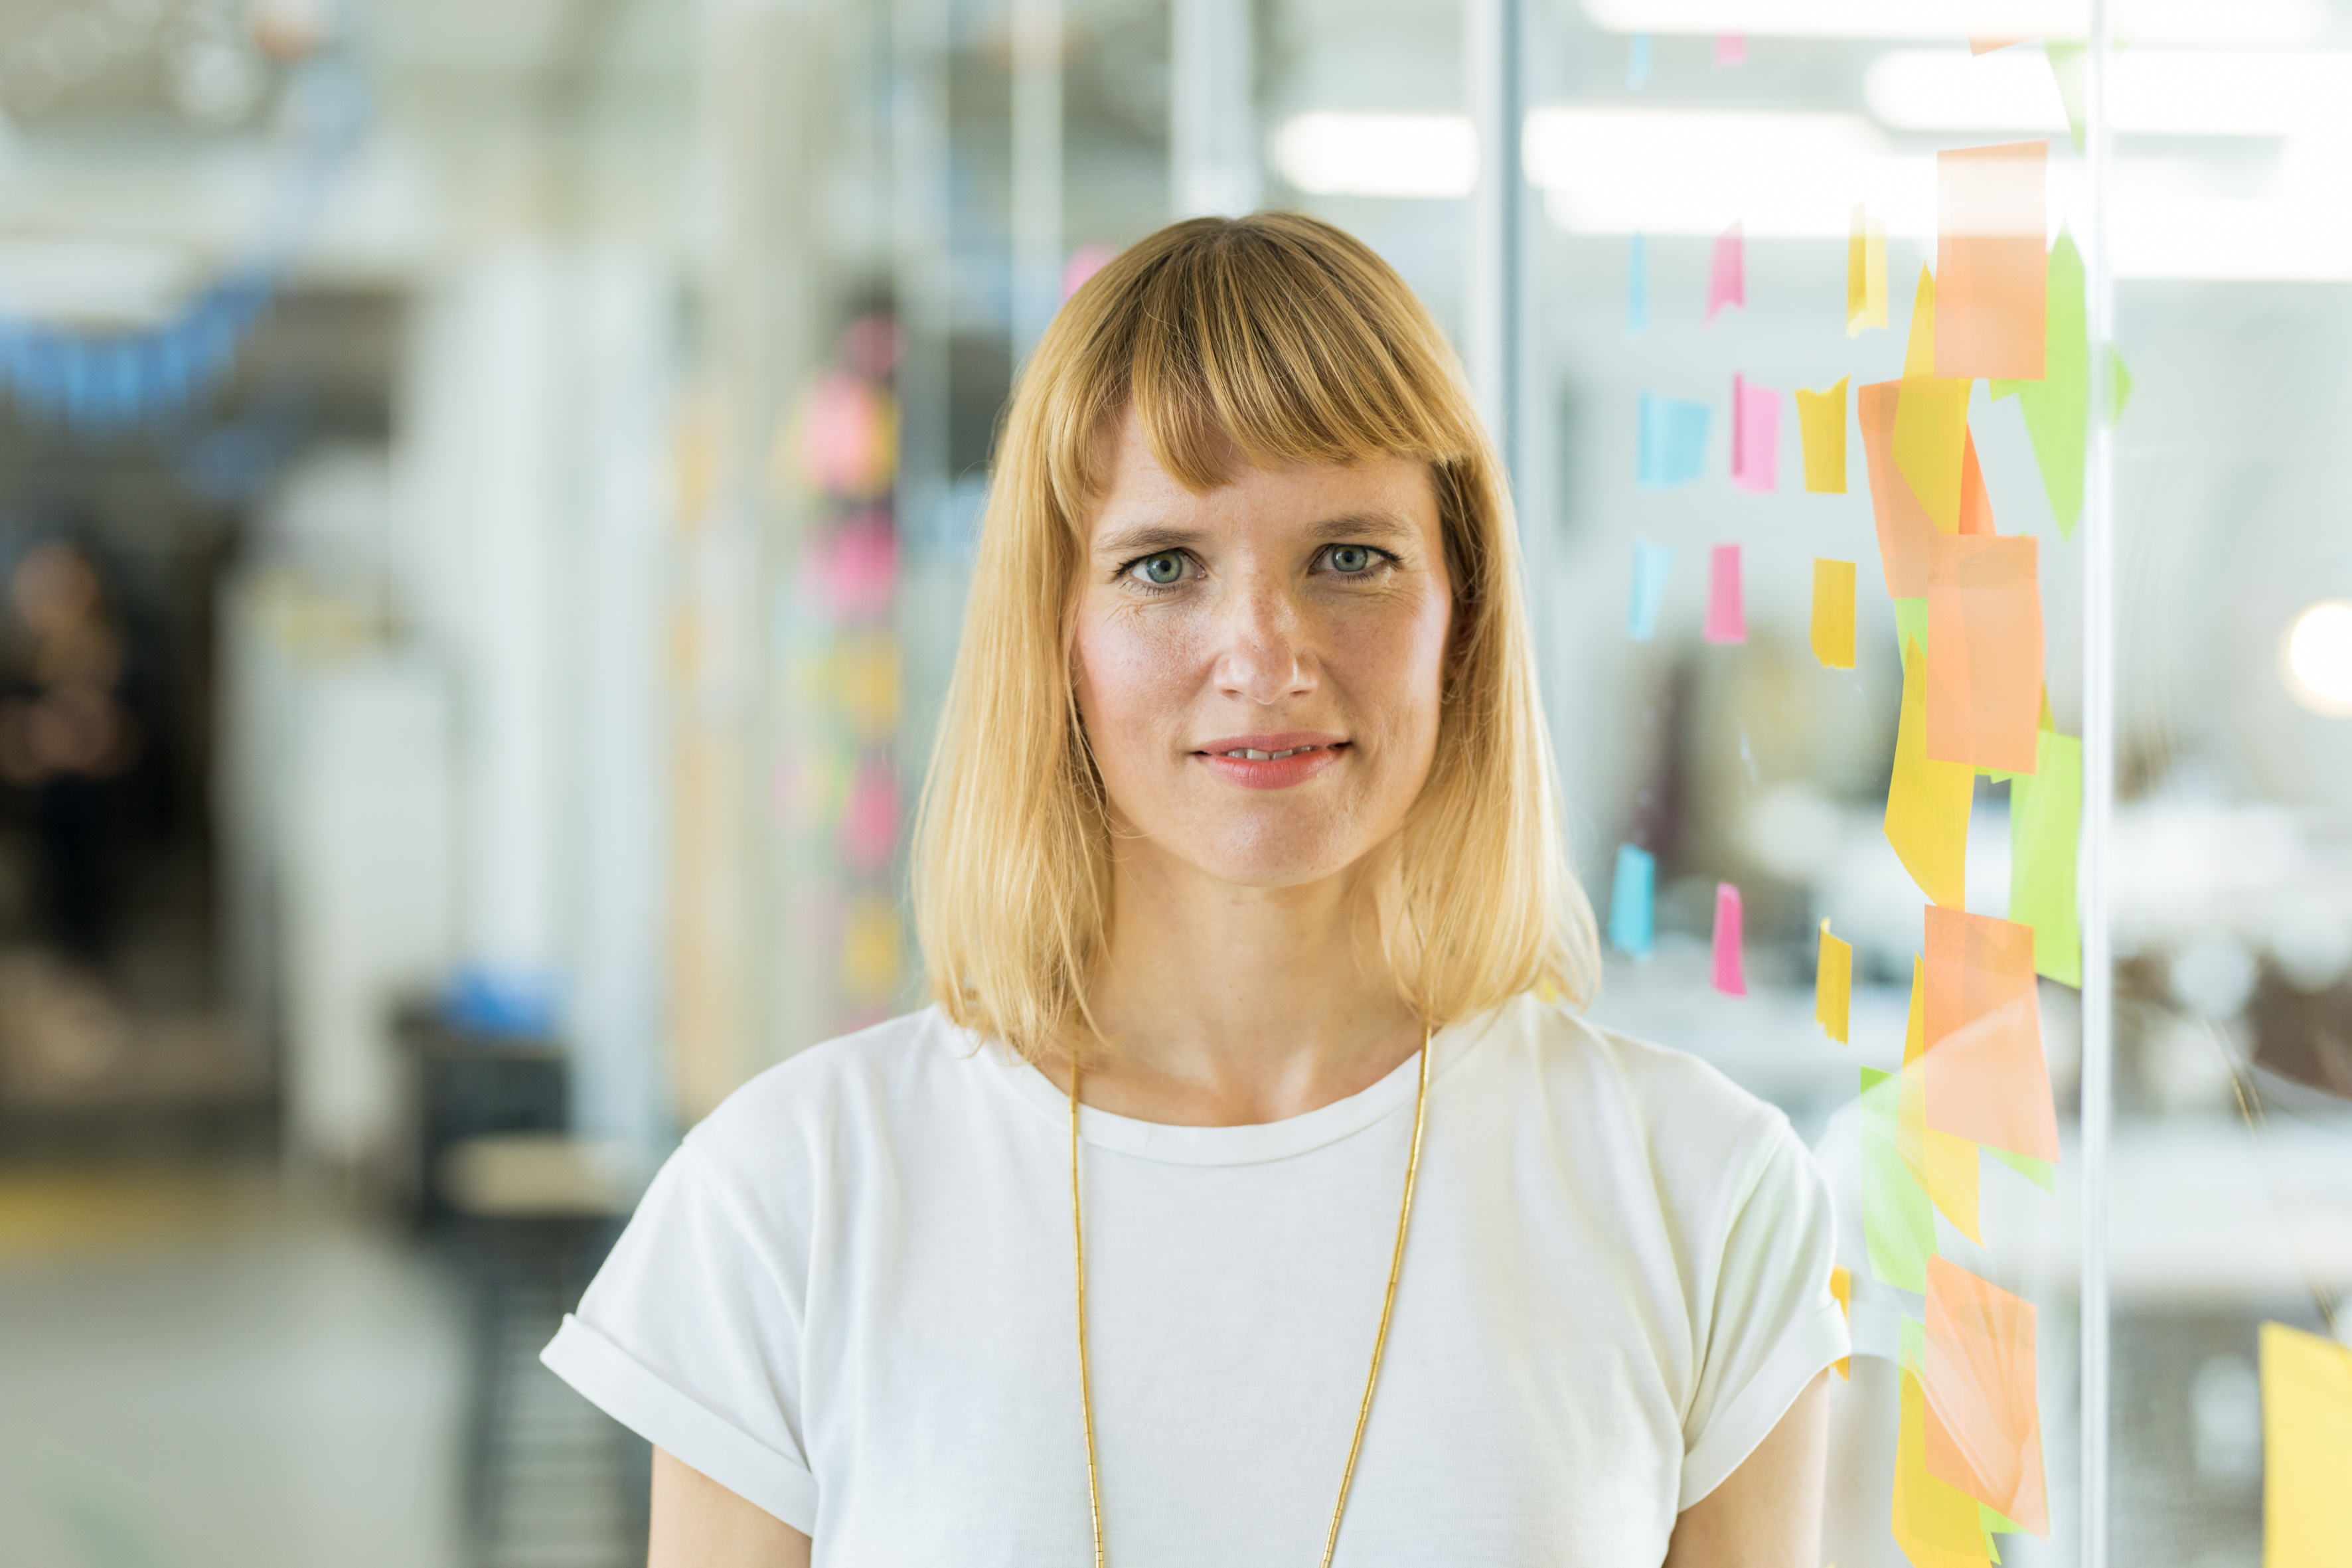 UX Designerin Charlotte steht in einem Büro vor einer Glaswand mit Notizzetteln. Sie trägt ein weißes T-Shirt und eine goldene Kette